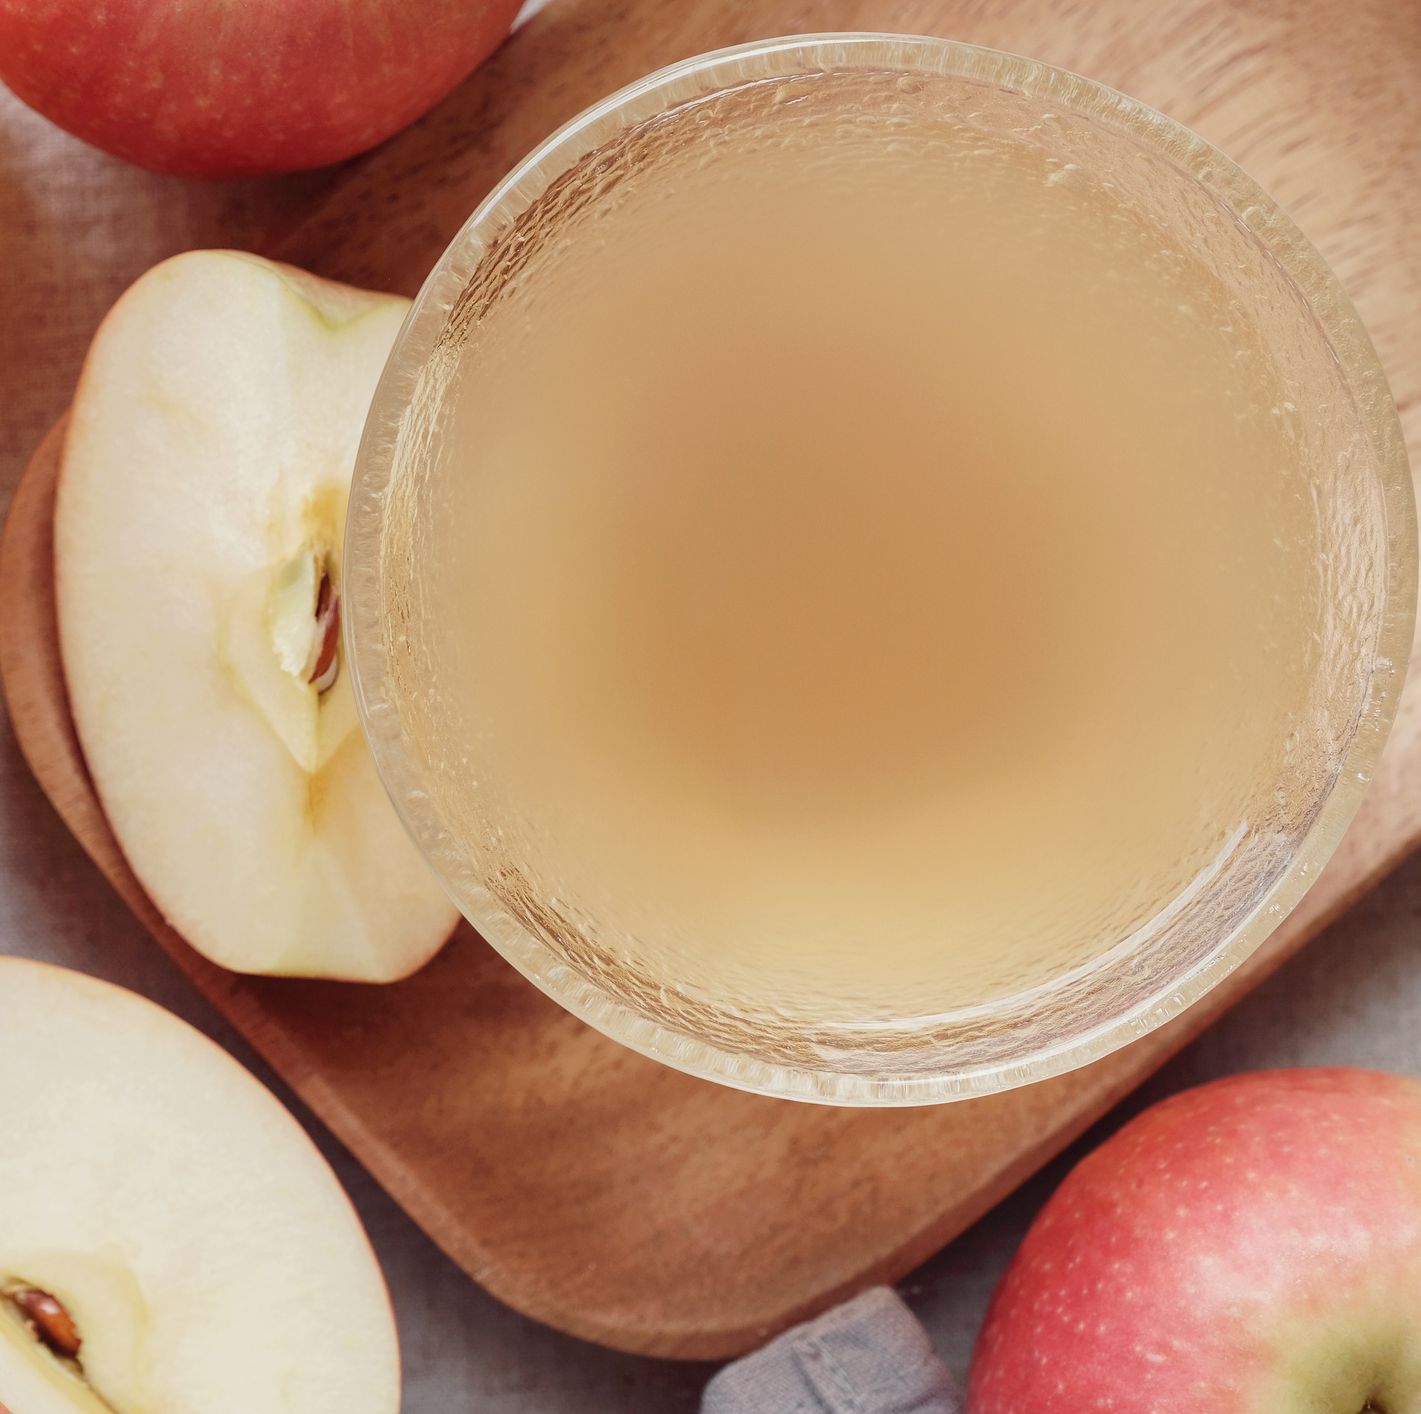 Los beneficios reales del vinagre de sidra de manzana, según un dietista registrado 2